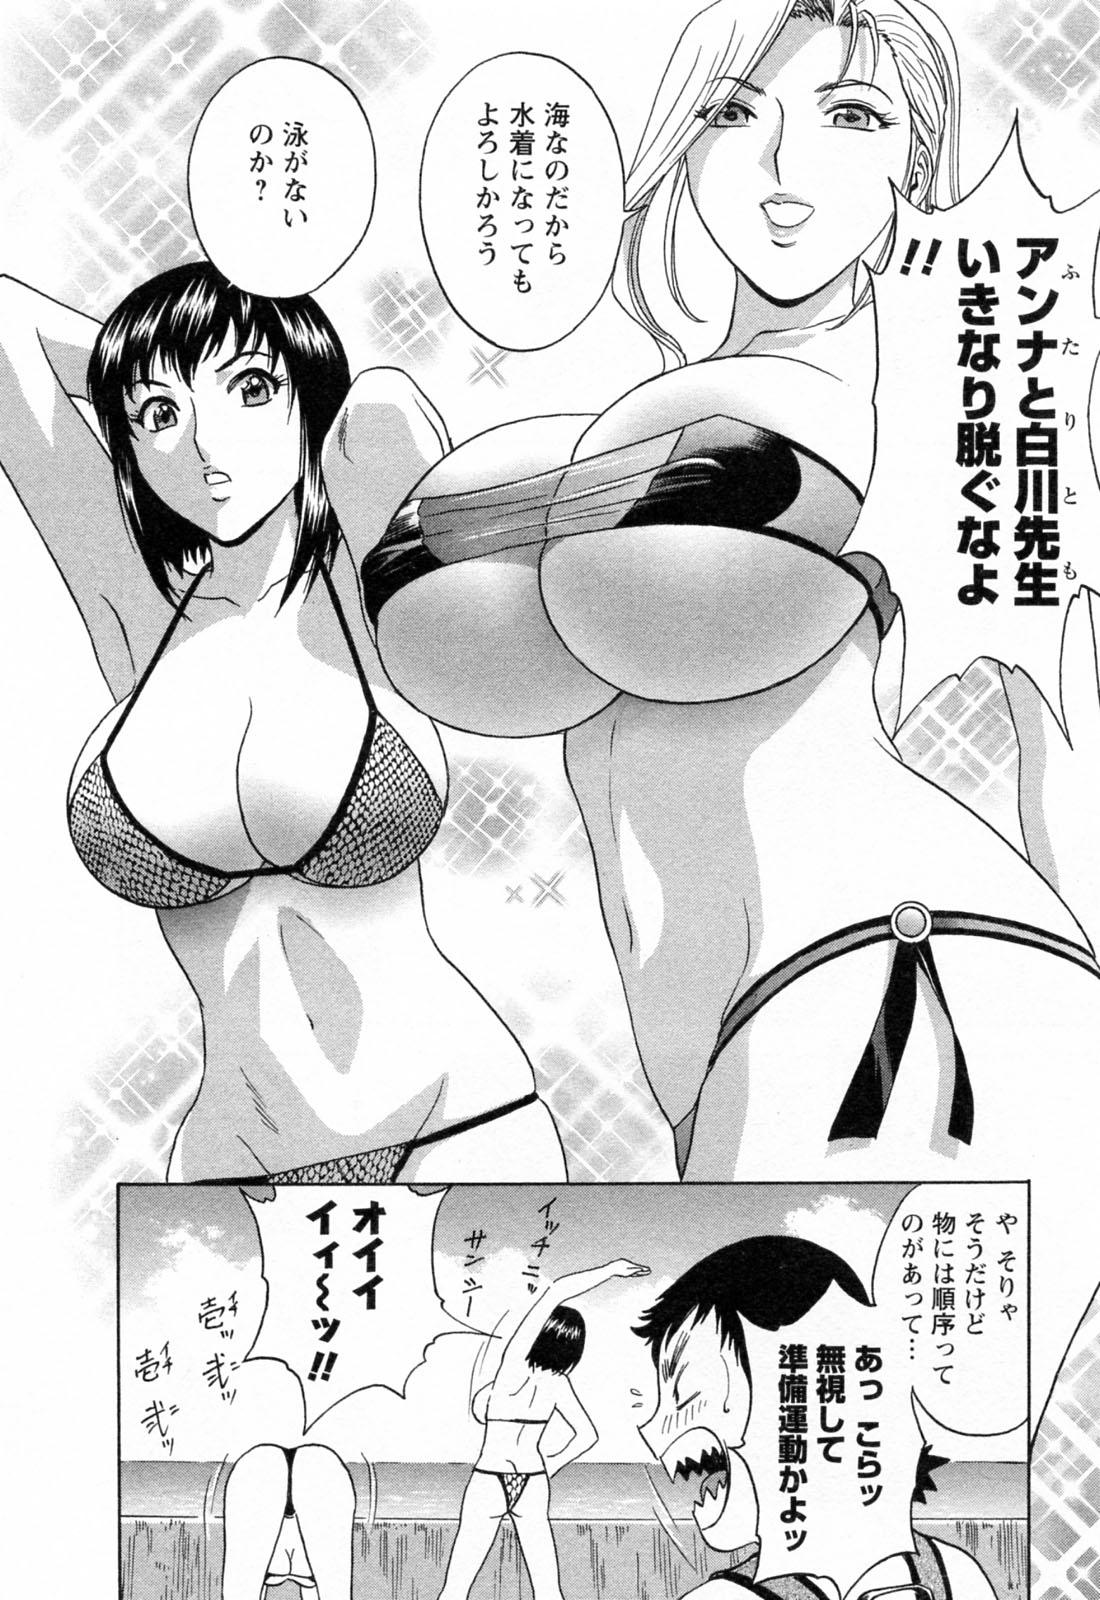 [Hidemaru] Mo-Retsu! Boin Sensei (Boing Boing Teacher) Vol.4 97